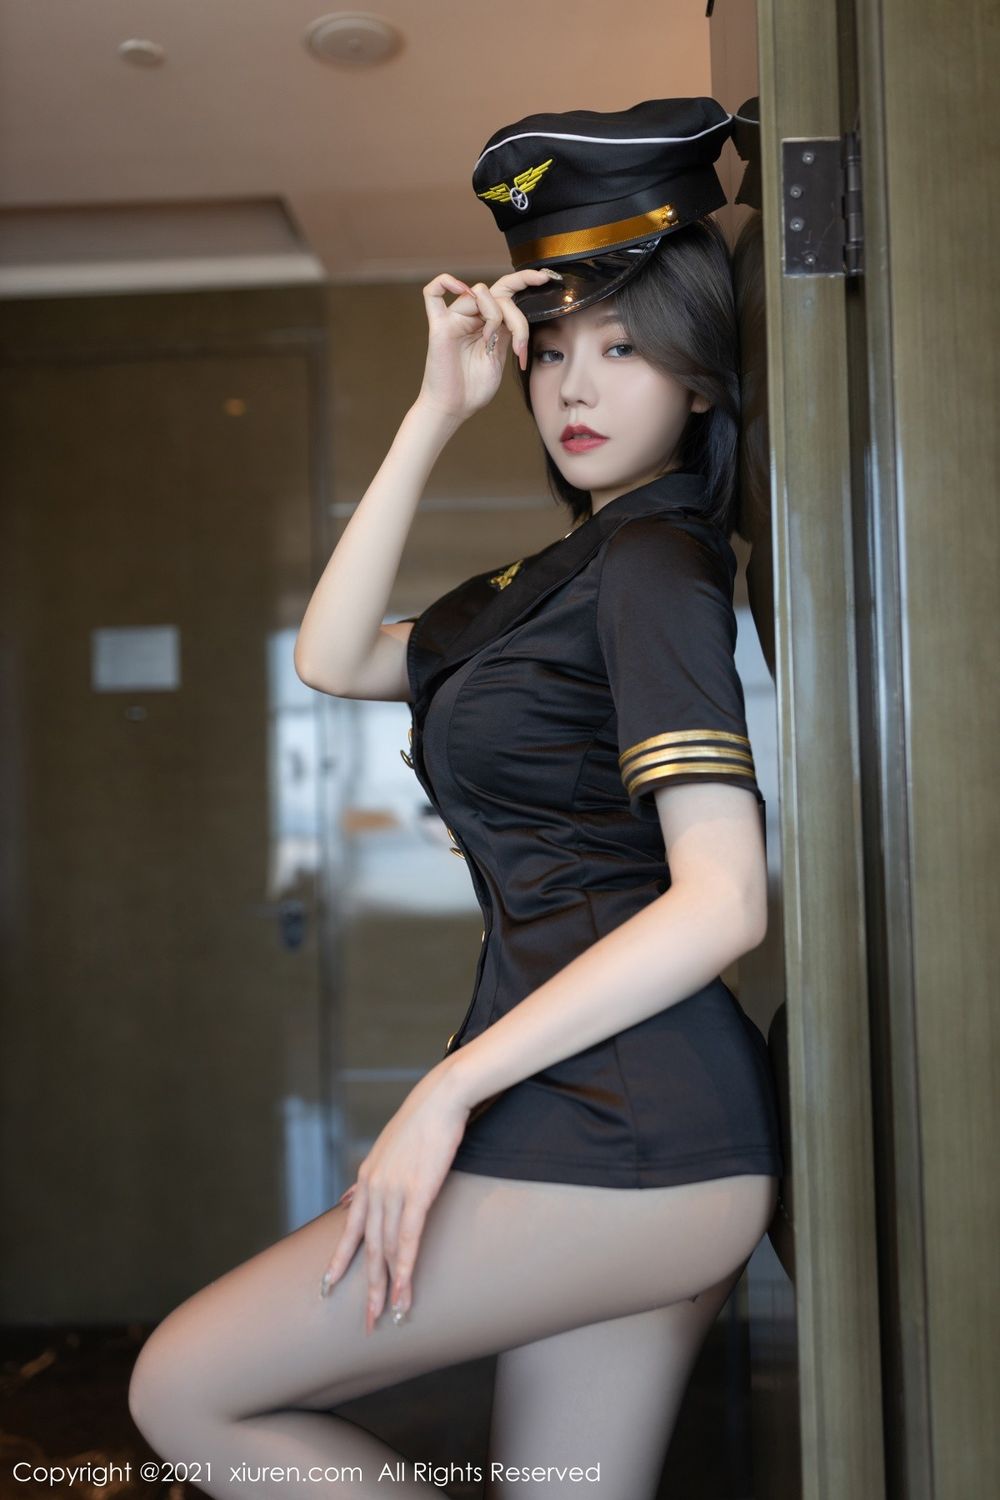 美女模特安然Maleah黑丝美腿空姐制服系列重庆旅拍